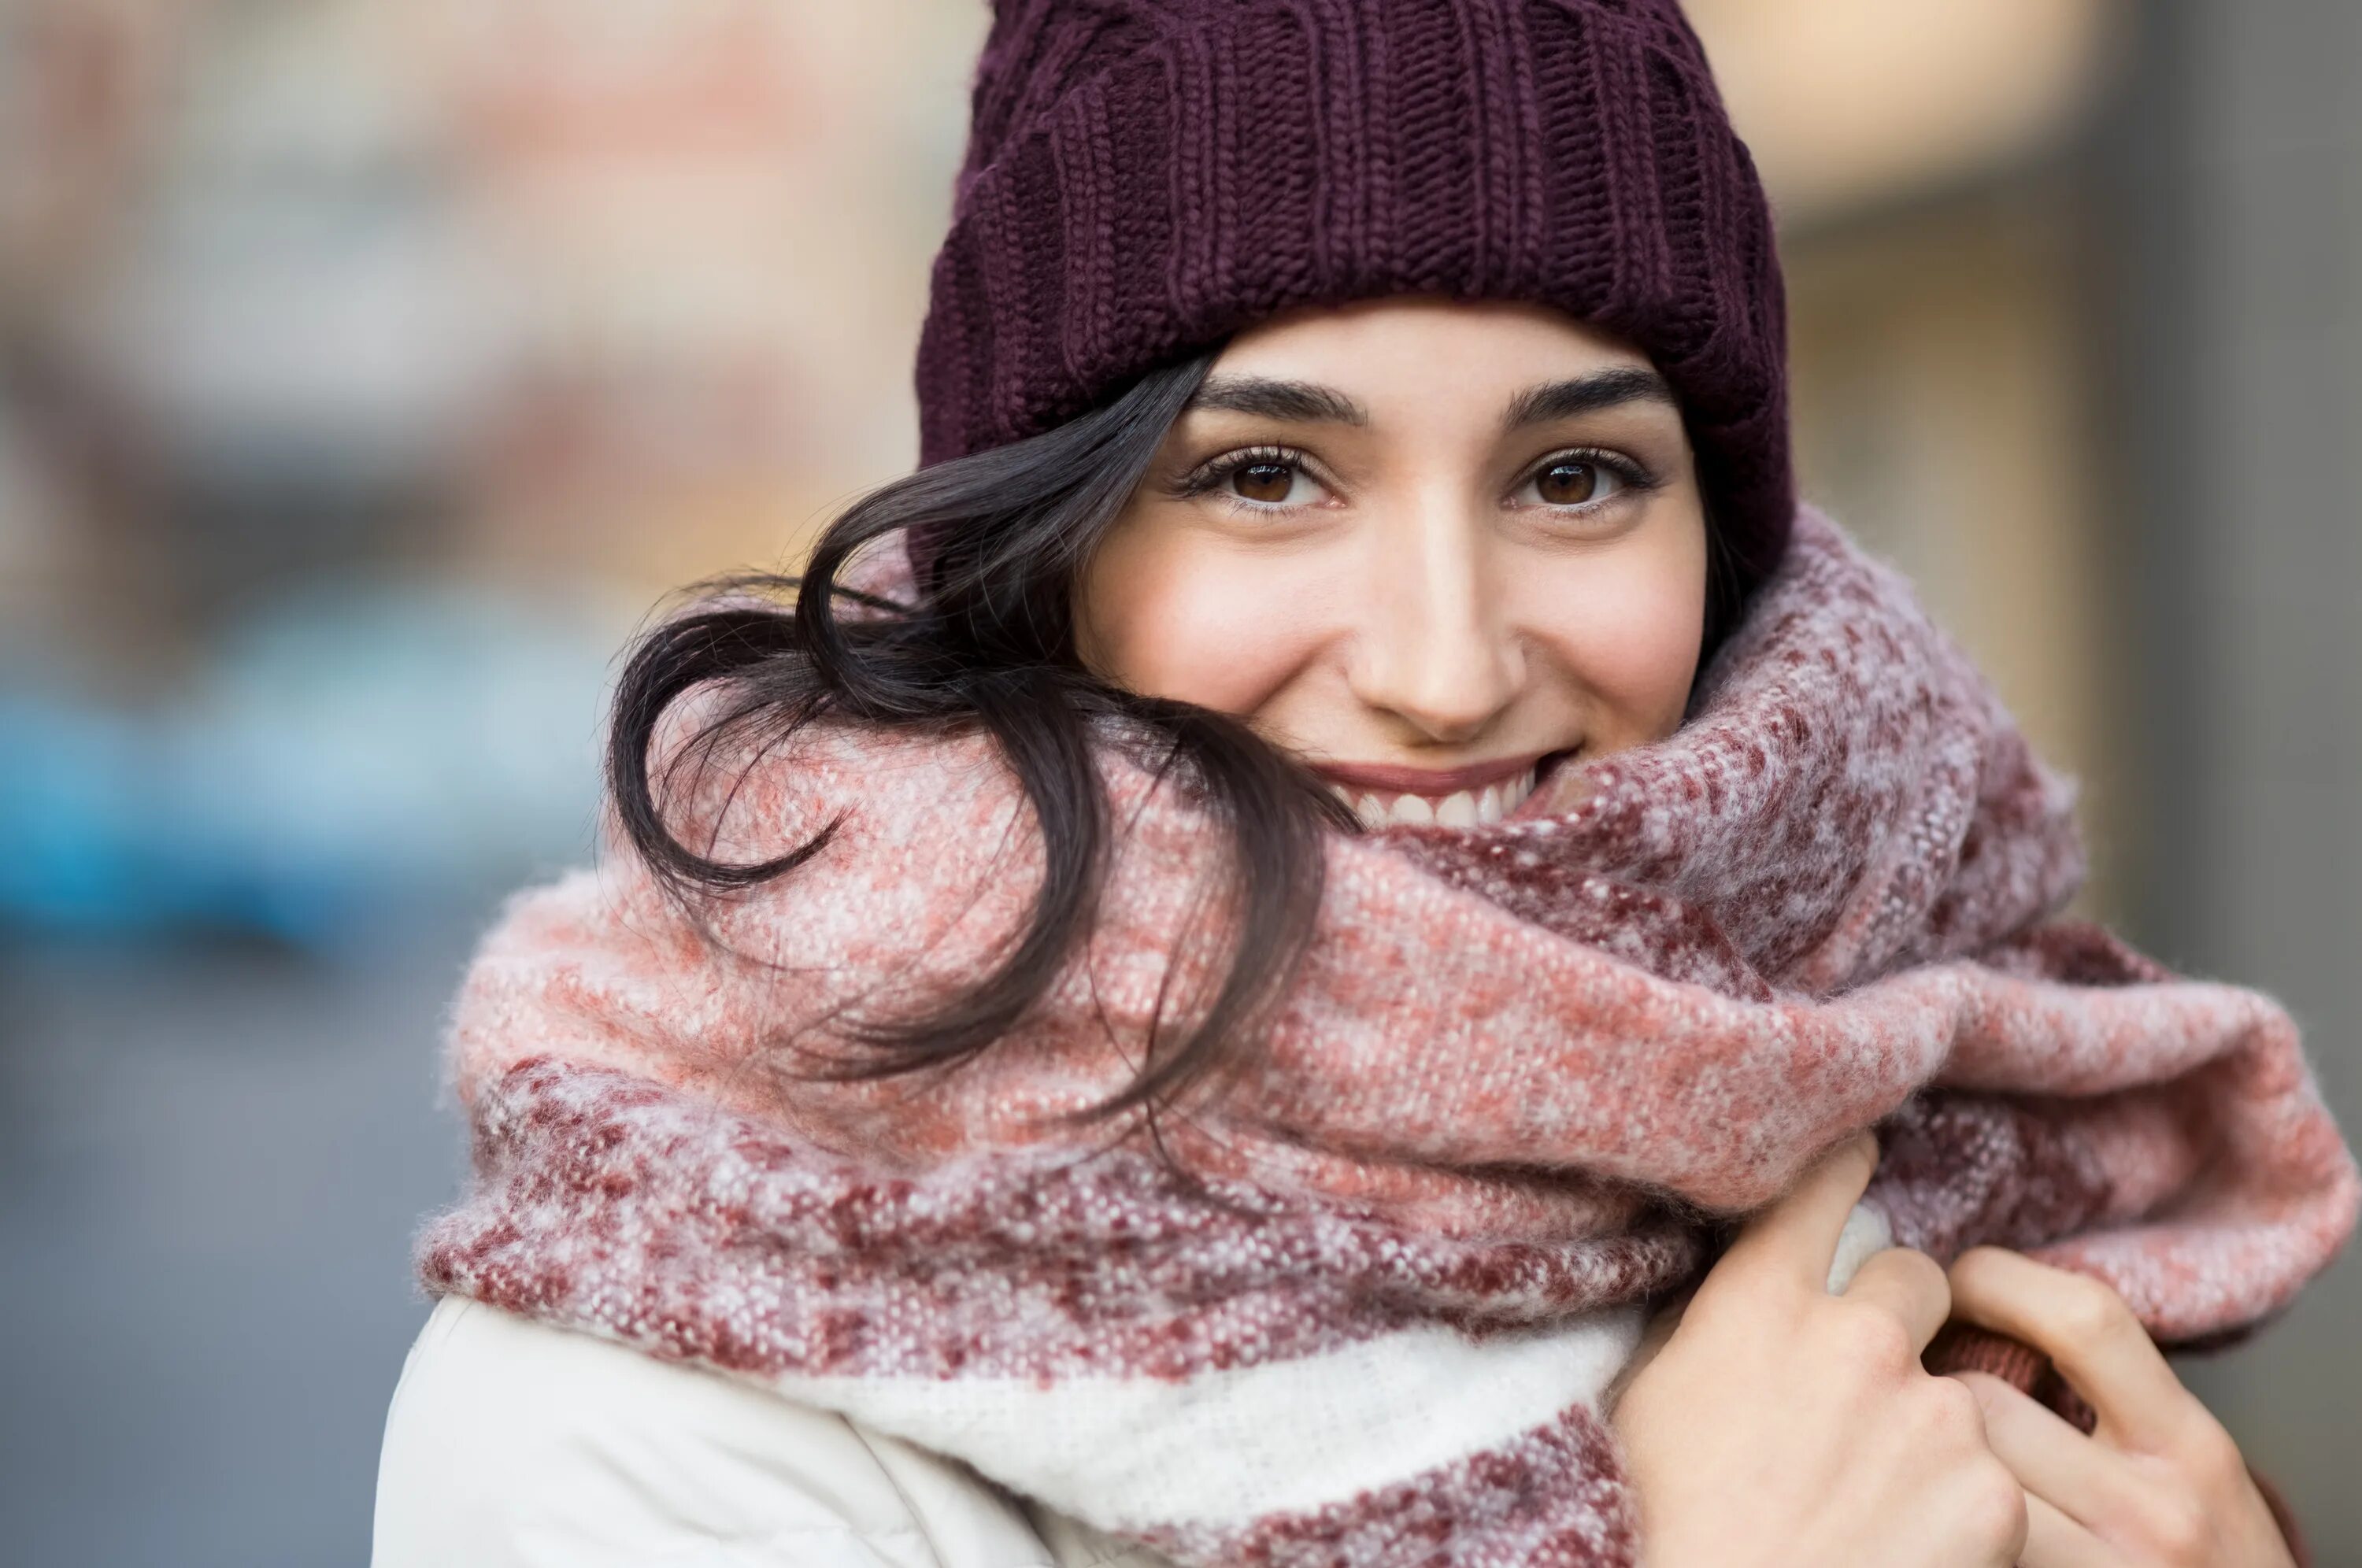 Теплая одежда зима. Девушка в шарфе зимой. Девушка в шапке и шарфе. Шапка шарф. Девушка в шапке зимой.